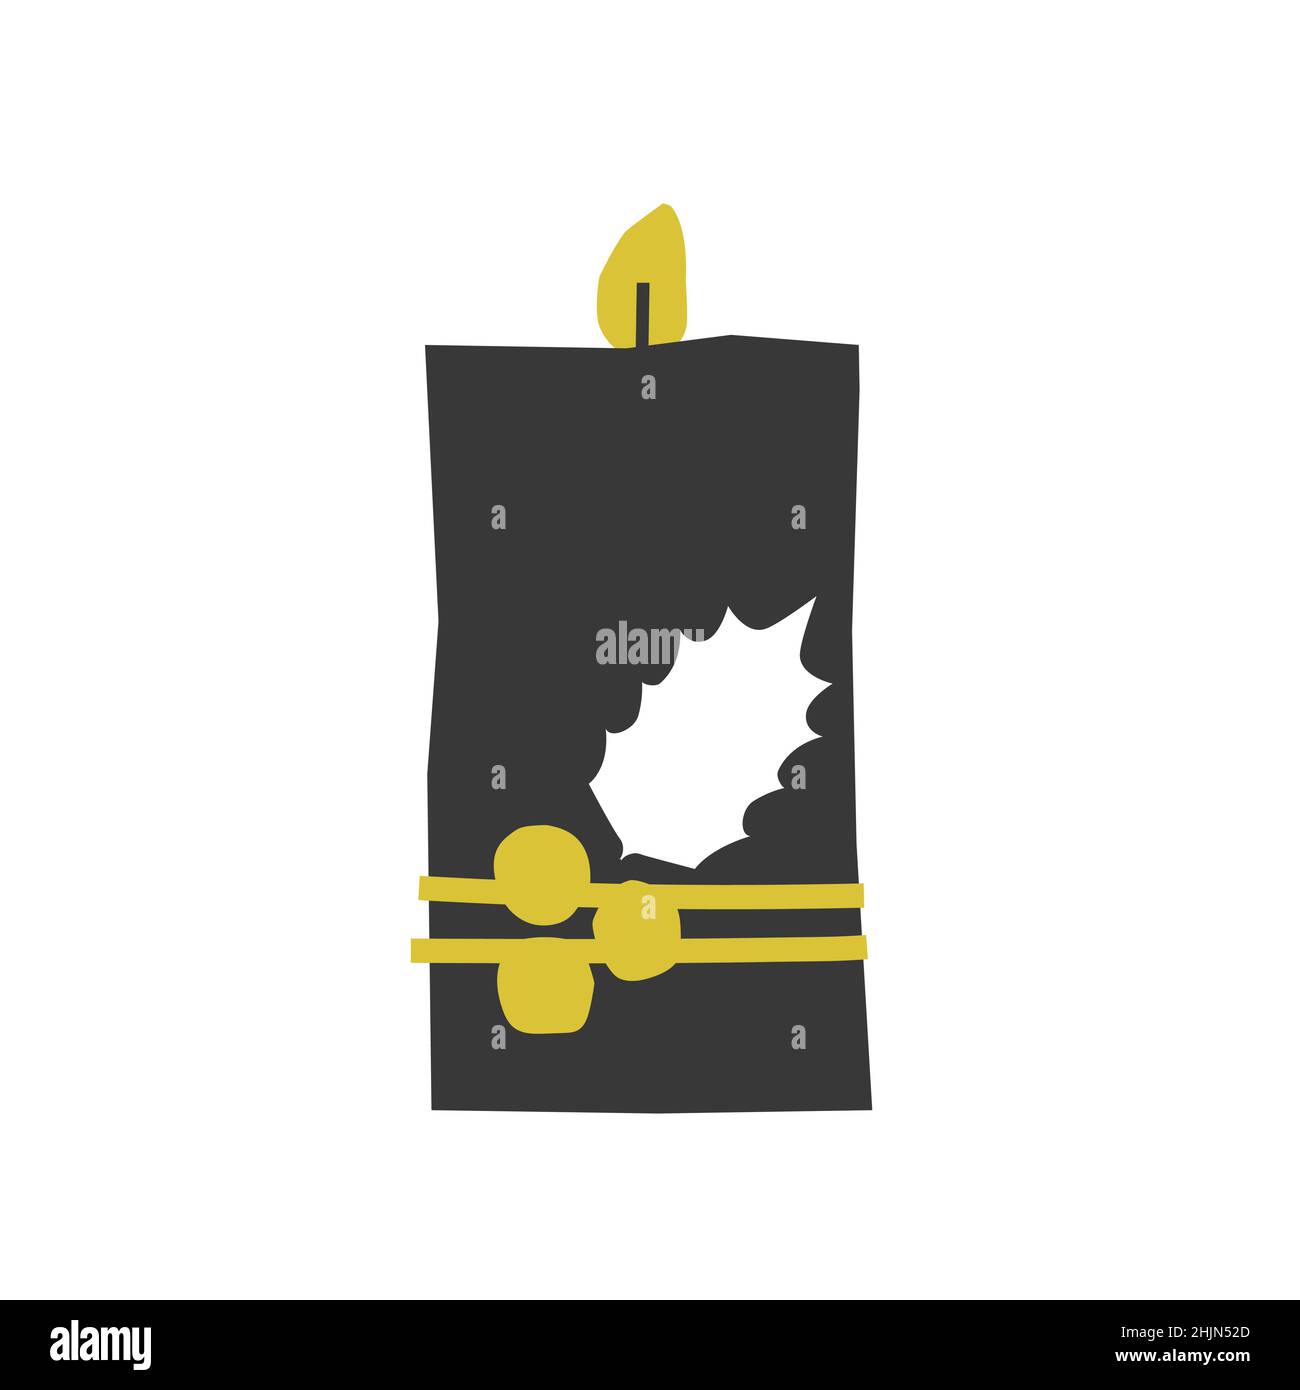 Vettore isolato mano piatta disegnata illustrazione di Natale. Candela di cera nera con fiamma gialla, decorata da agrifoglio. Forma minimalista semplificata, Scandin Illustrazione Vettoriale